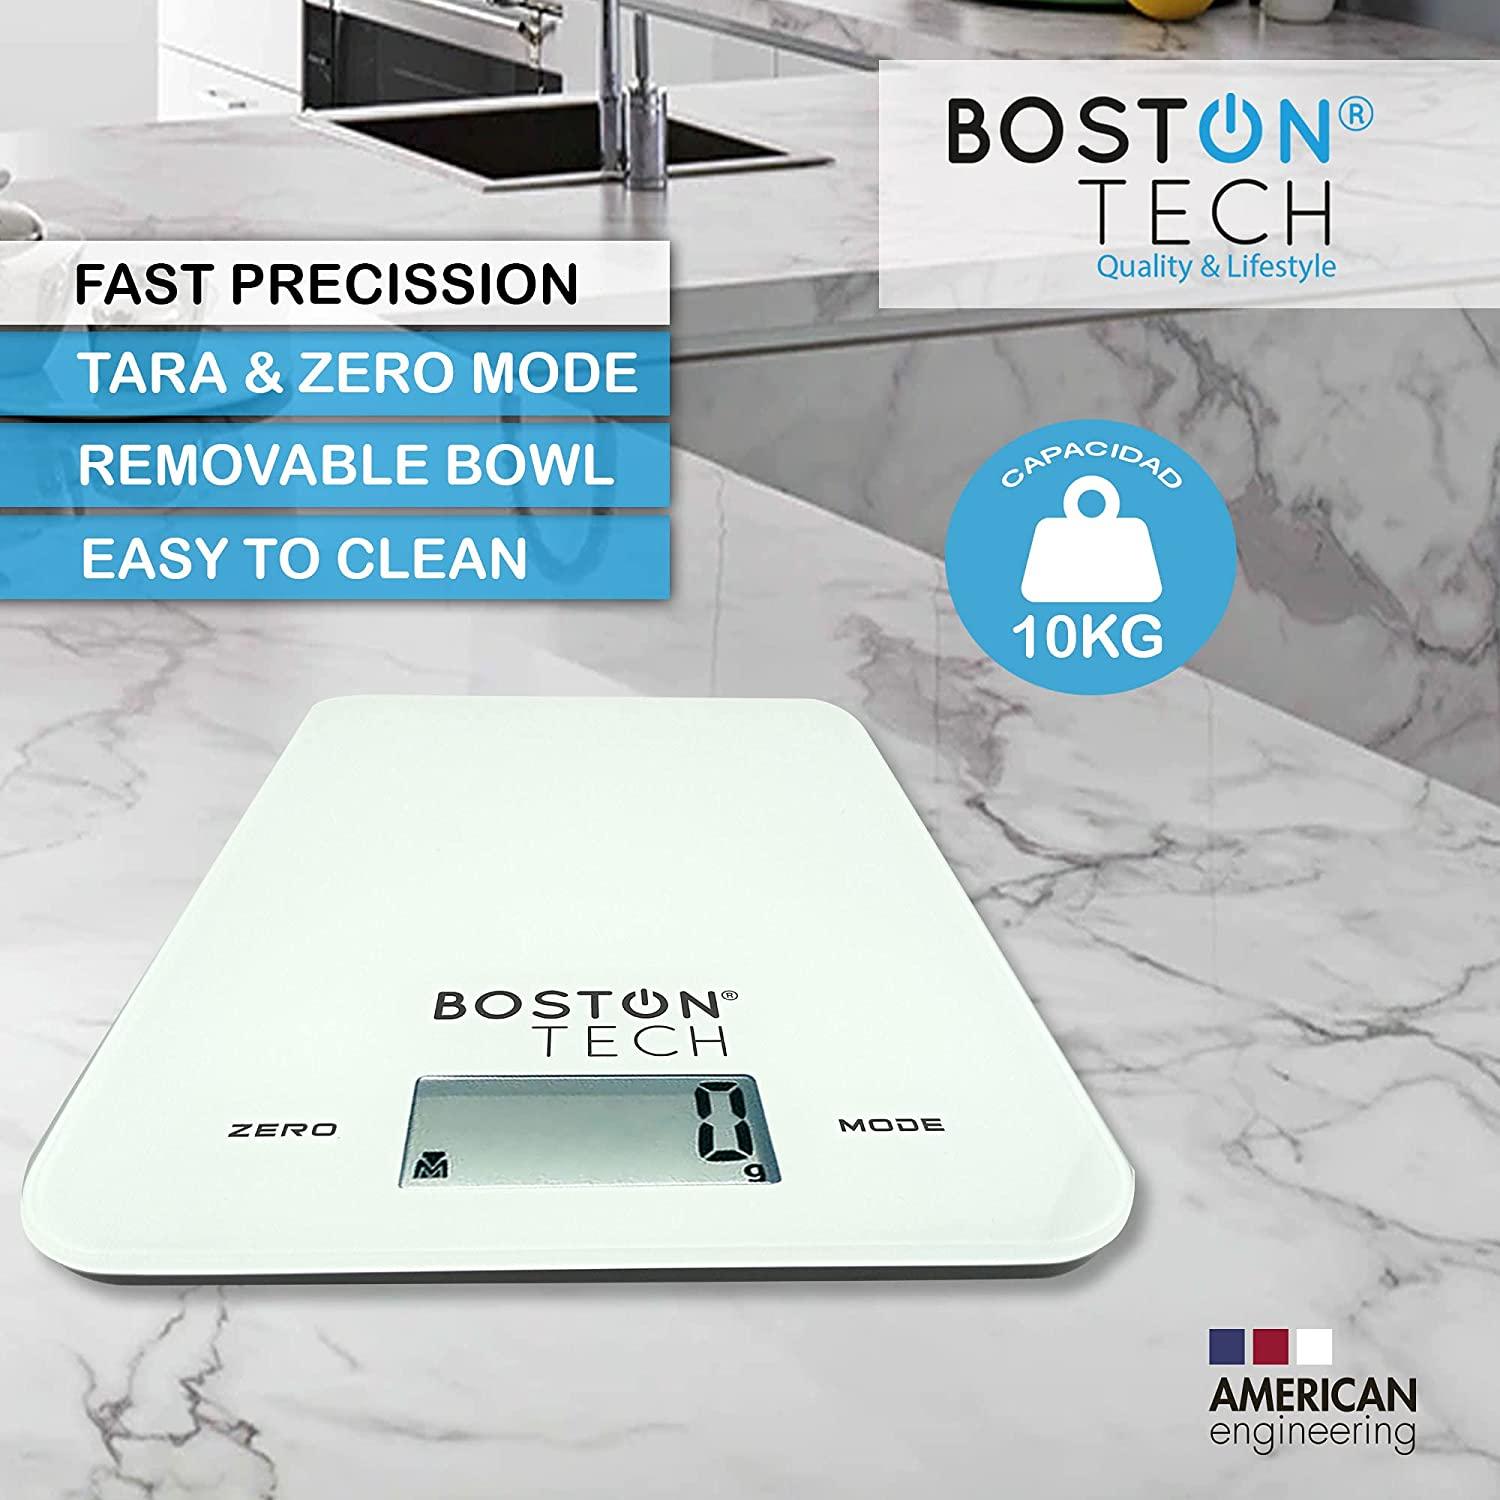 Báscula Cocina BostonTech HK112 Balanza de Precisión alimentos Capacidad  10kg - Ayuda culinaria - Los mejores precios